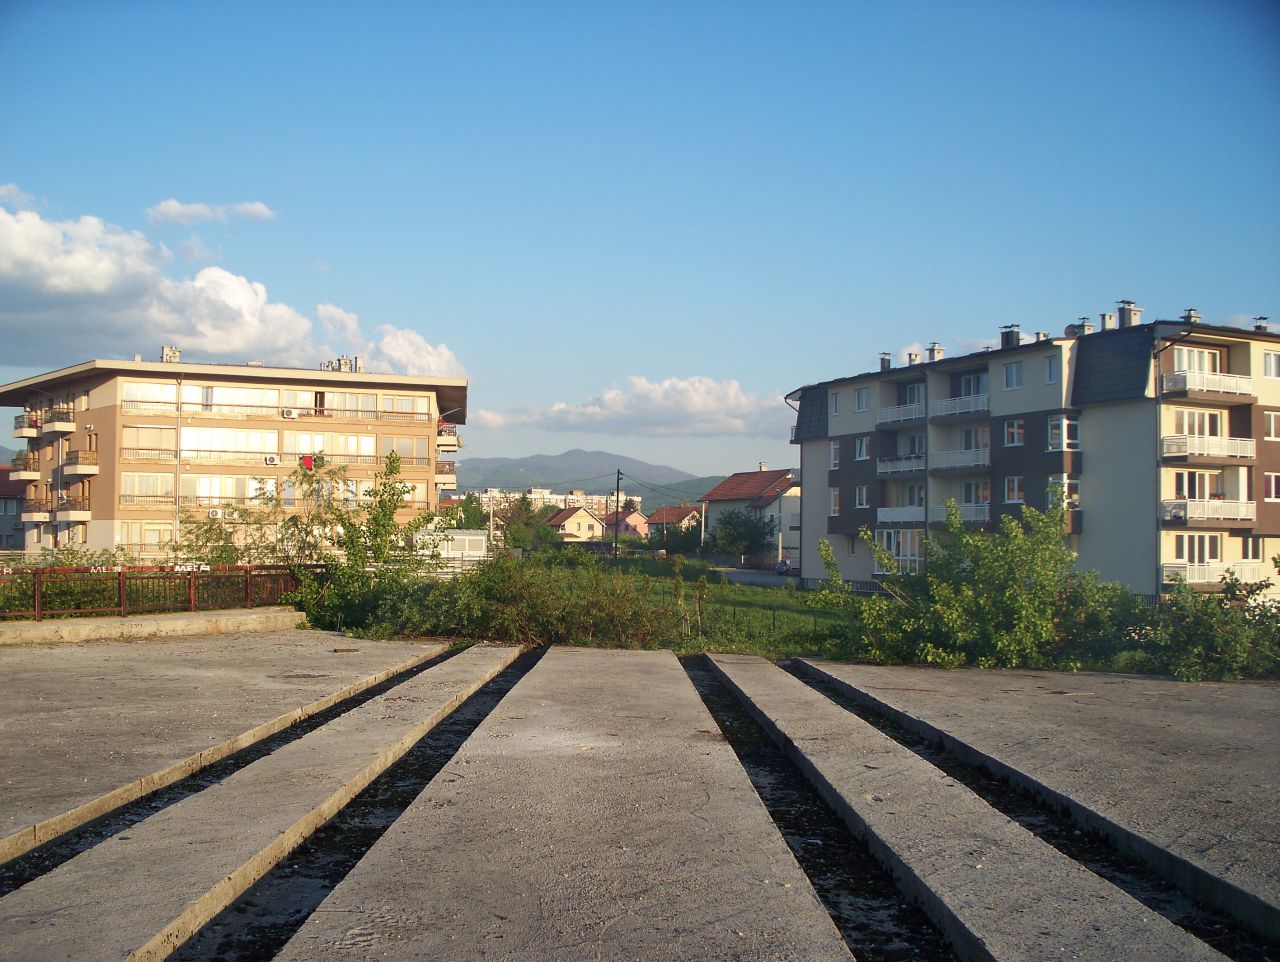 Tramvajov most na Dobrinji, 2012